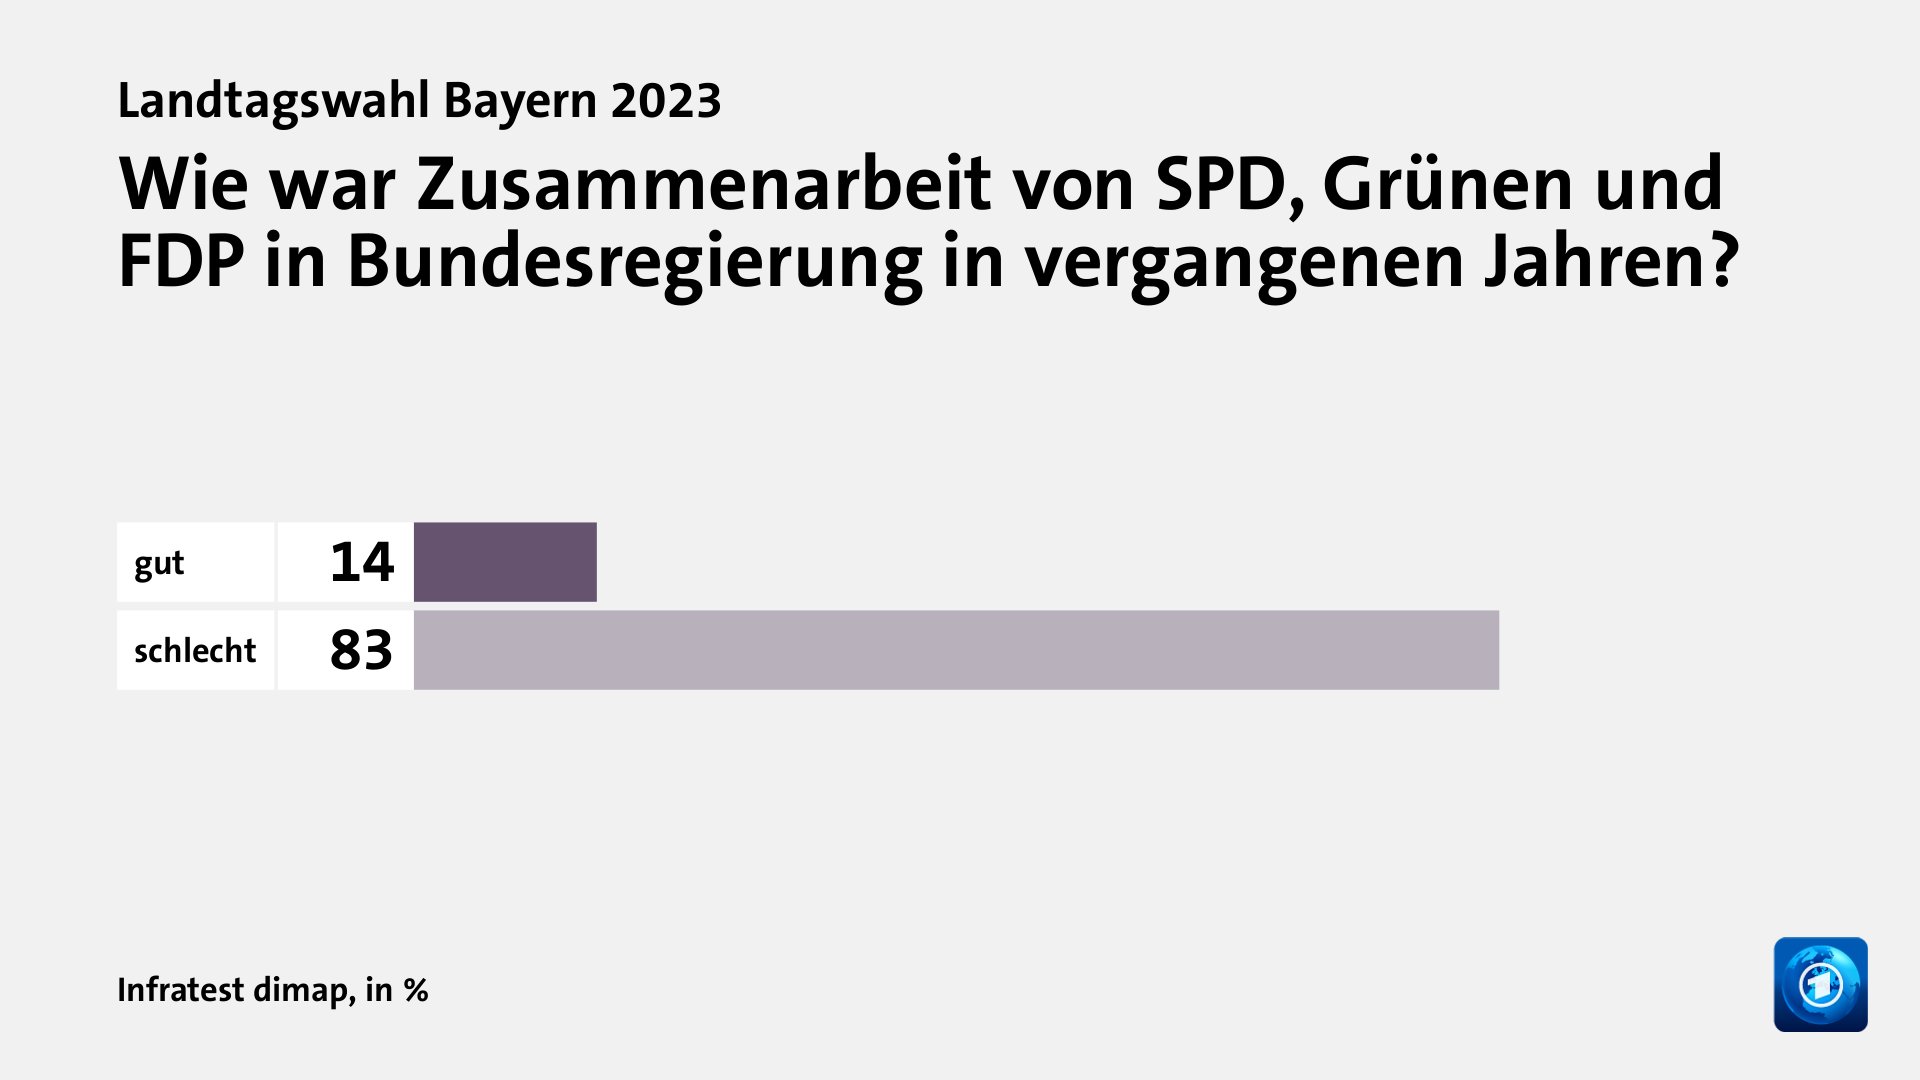 Wie war Zusammenarbeit von SPD, Grünen und FDP in Bundesregierung in vergangenen Jahren?, in %: gut 14, schlecht 83, Quelle: Infratest dimap